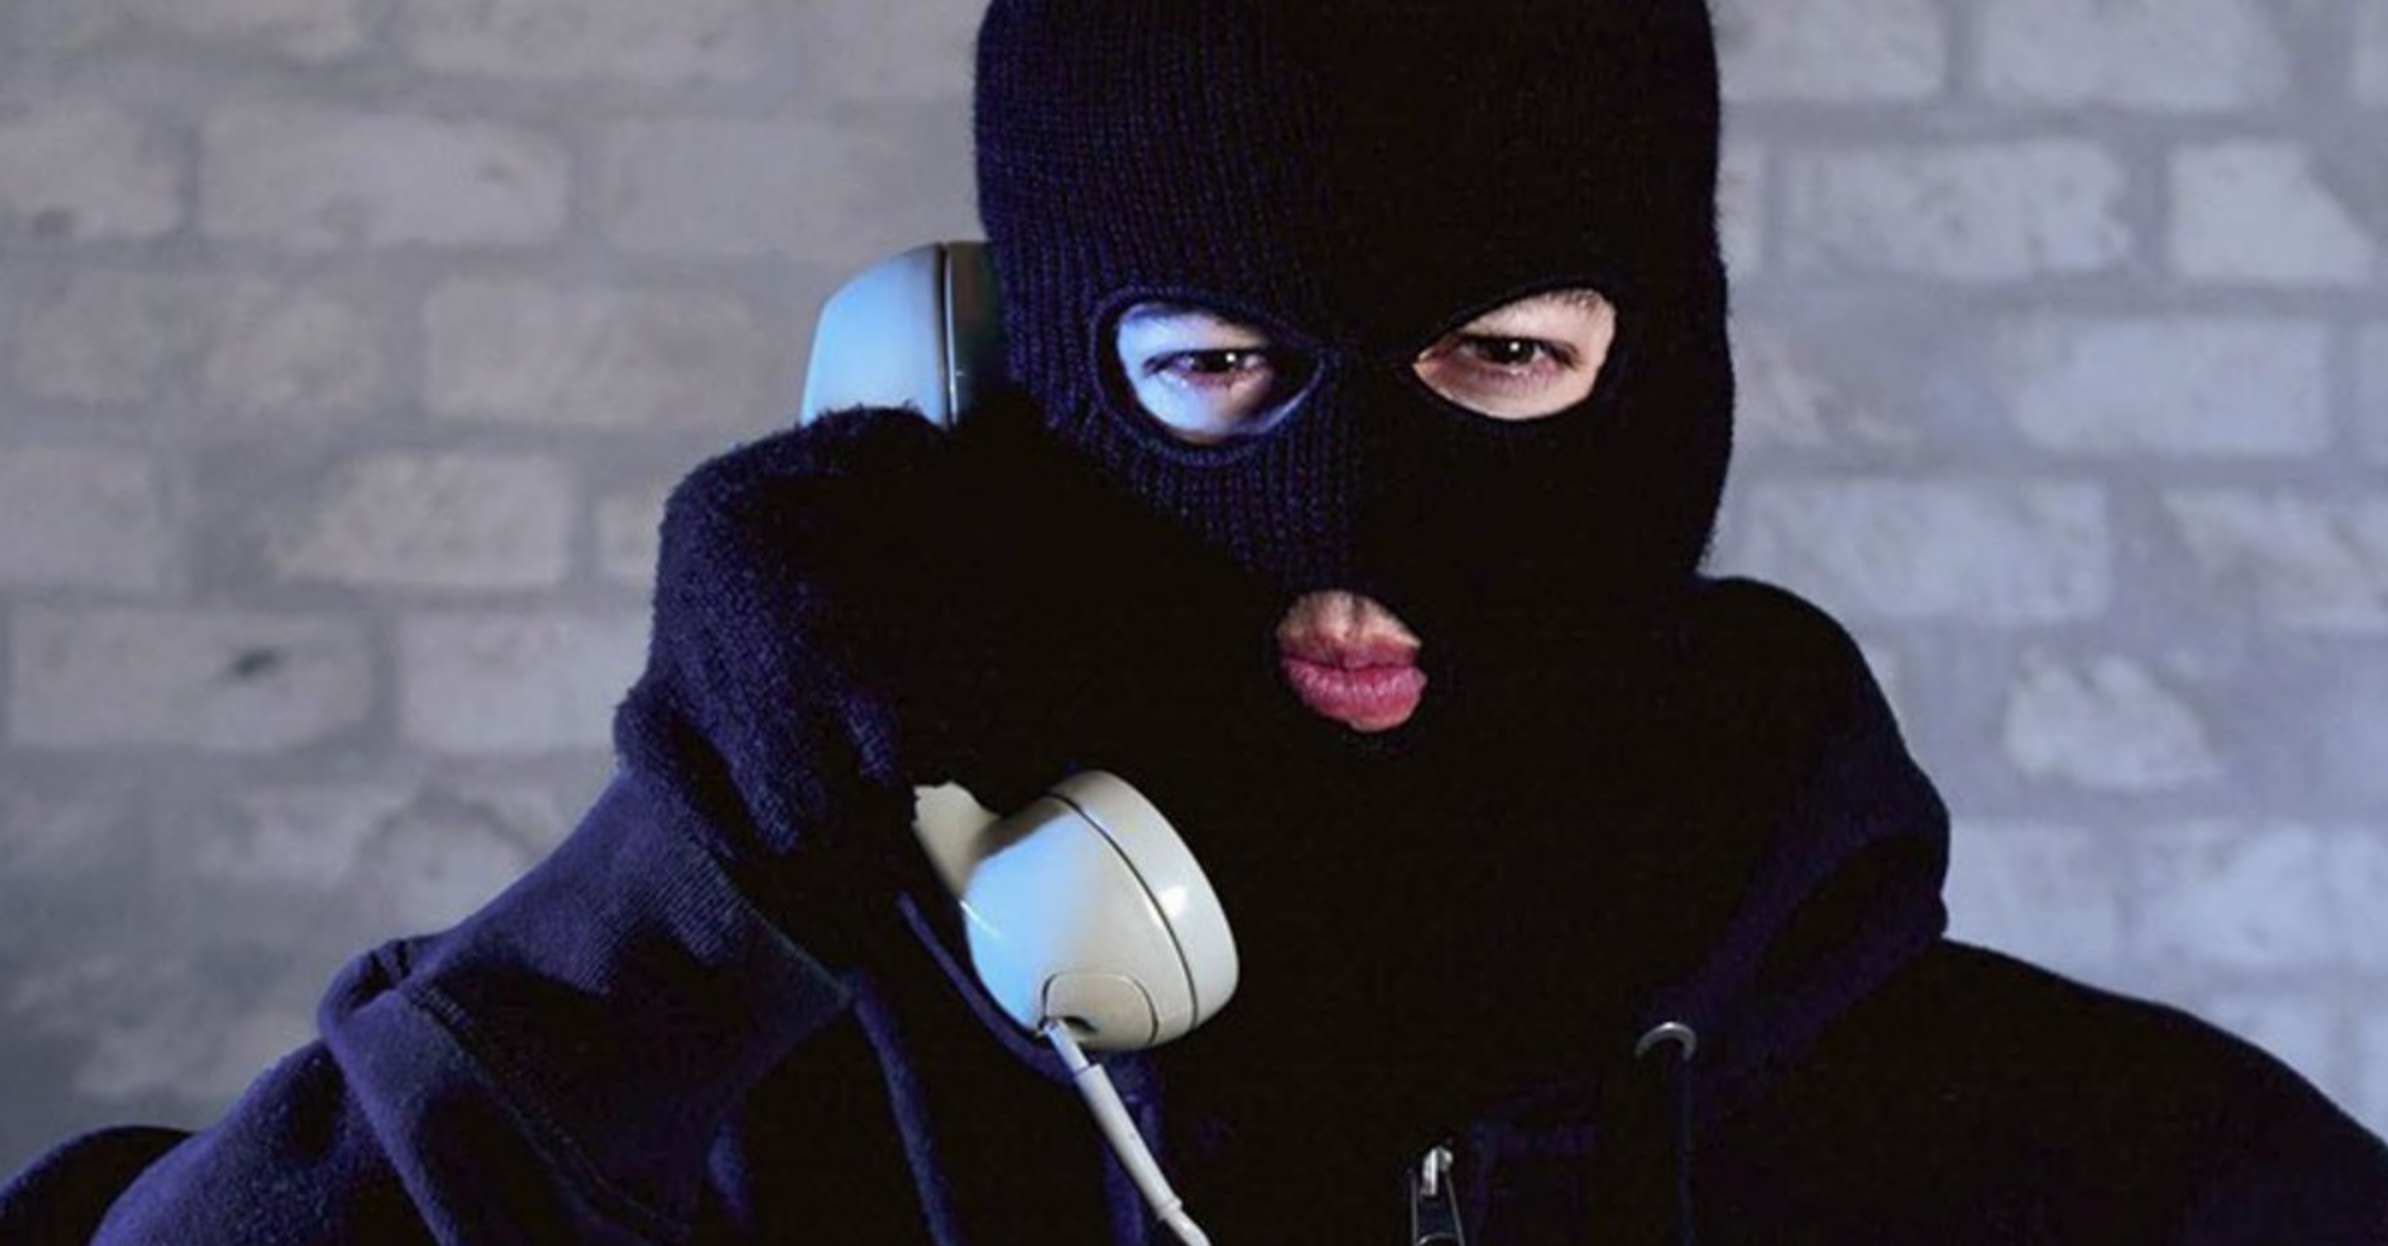 Анонимные объявления masked. Телефонный терроризм. Телефонный террорист. Человек в маске с телефоном. Звонок с угрозами.